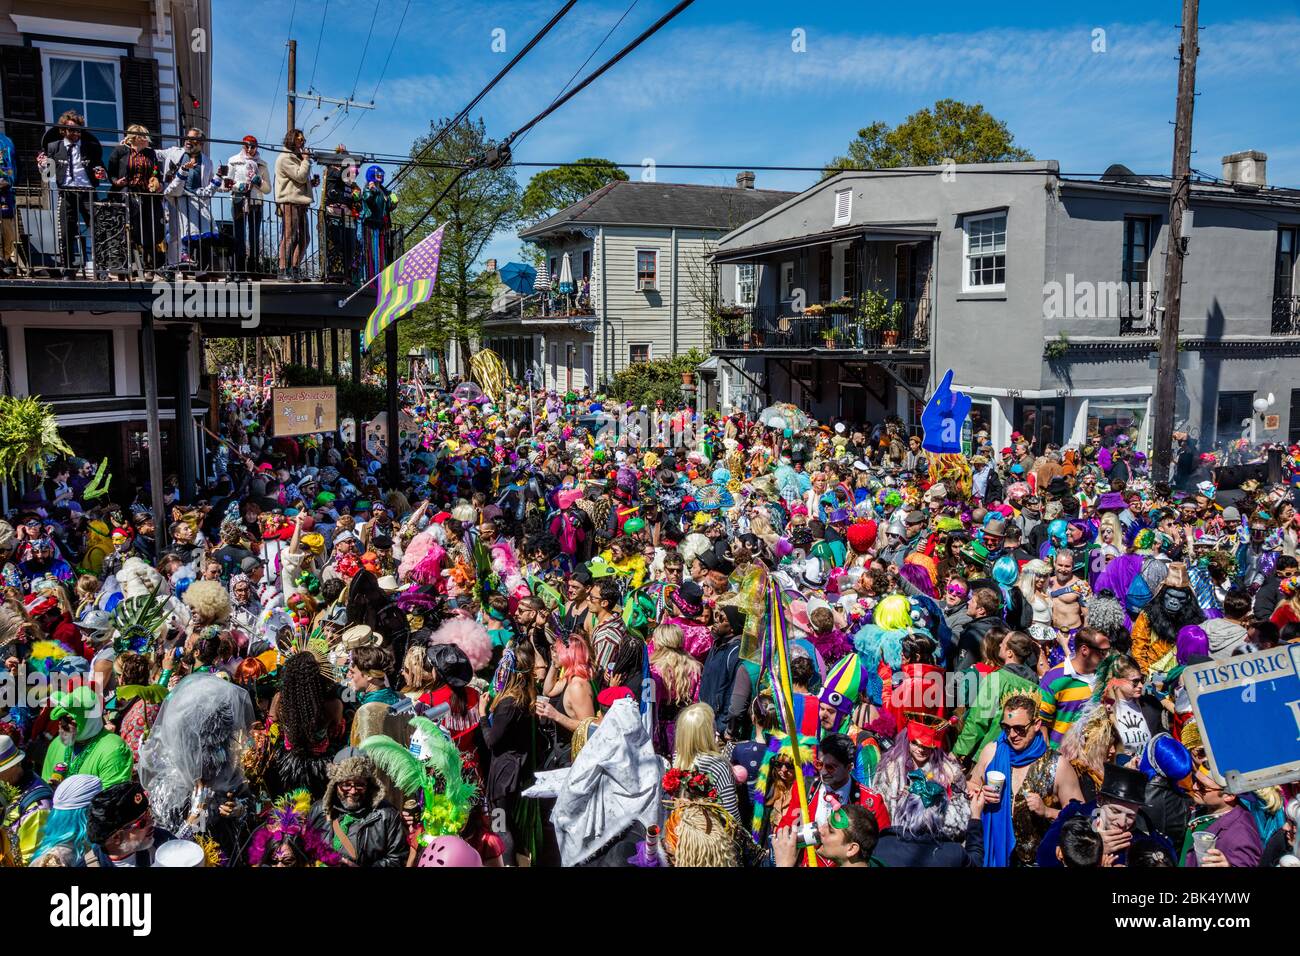 Festose folle in costume a Royal Street appena fuori dal quartiere Francese durante il Mardis Gras a New Orleans, Louisiana Foto Stock